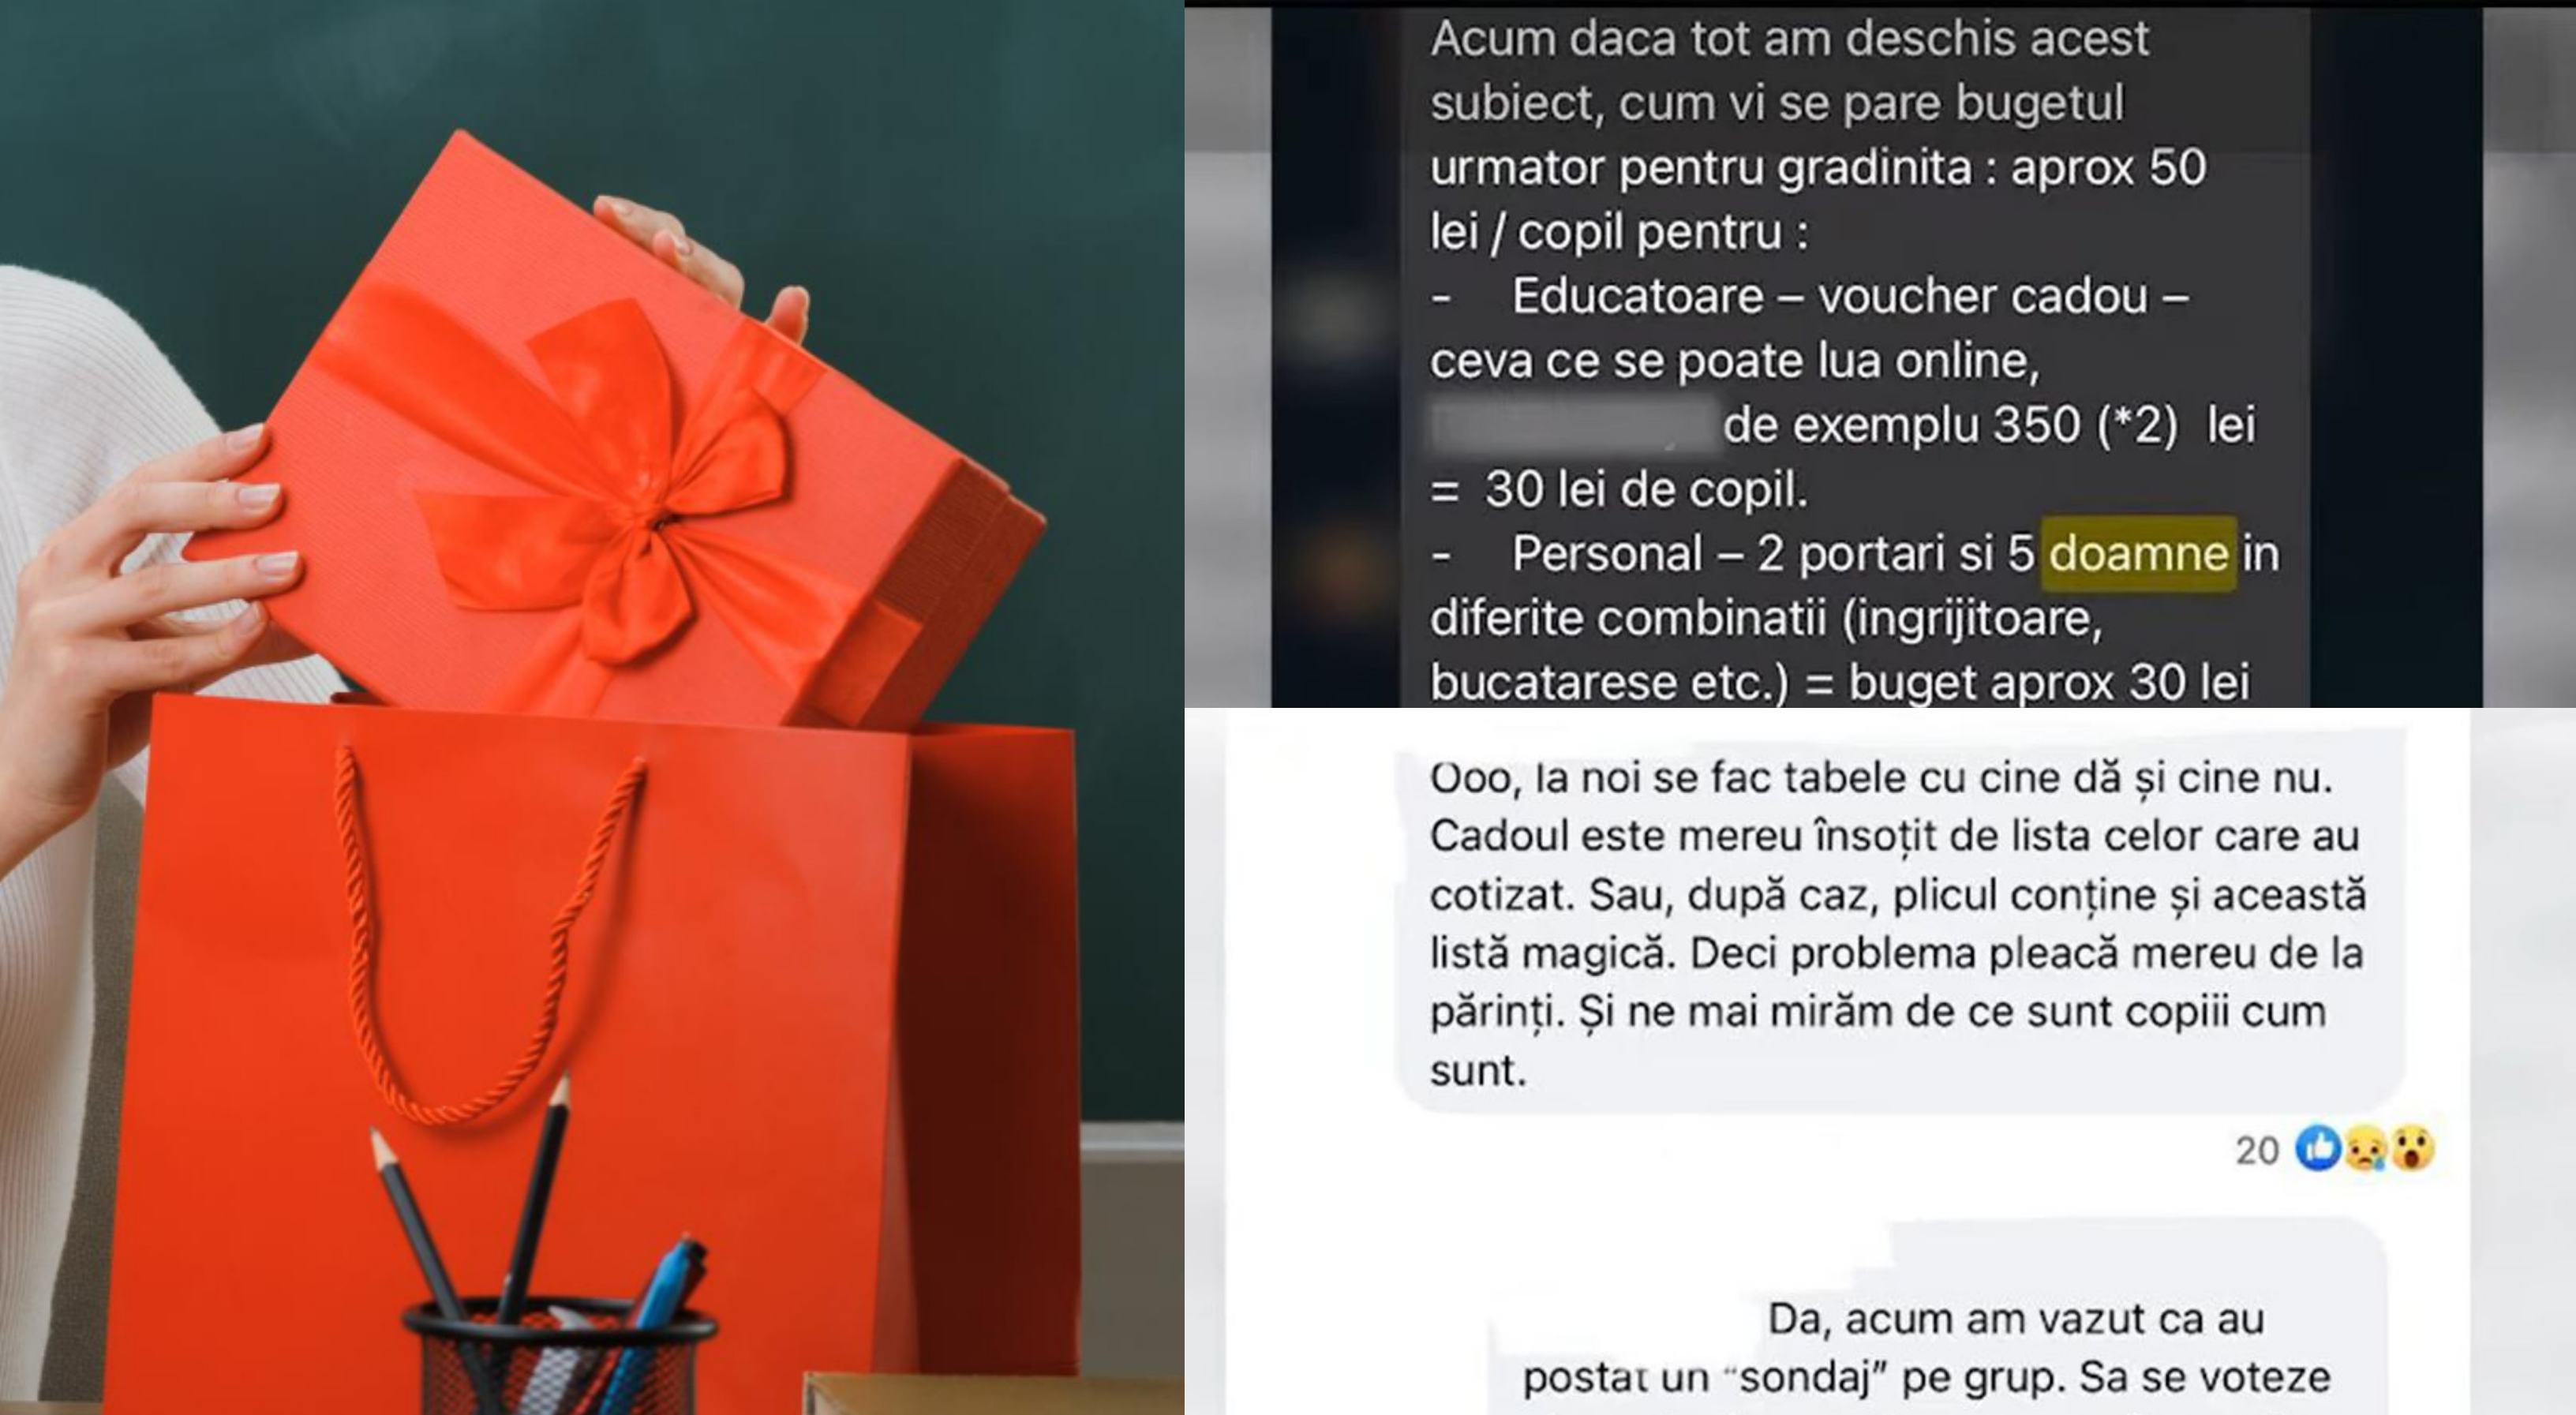 Cadourile de Craciun pentru profesori ajung si la 1000 de euro in unele scoli! Parintii care nu dau bani, sunt „parati” la doamna